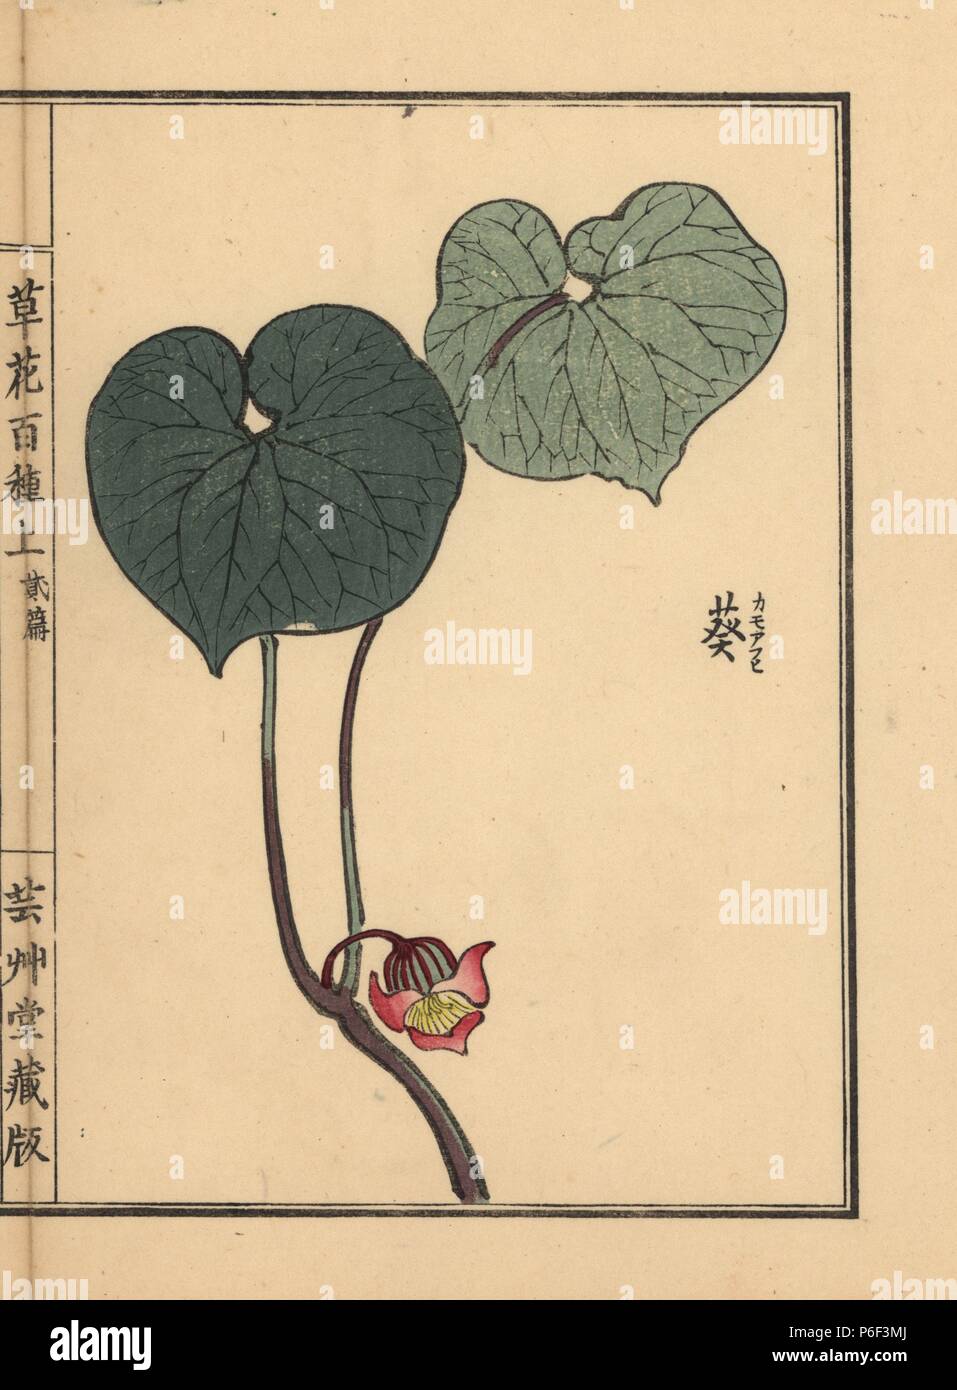 Japanese wild ginger, Asarum caulescens Maxim. Handcoloured woodblock print by Kono Bairei from Kusa Bana Hyakushu (One Hundred Varieties of Flowers), Tokyo, Yamada, 1901. Stock Photo